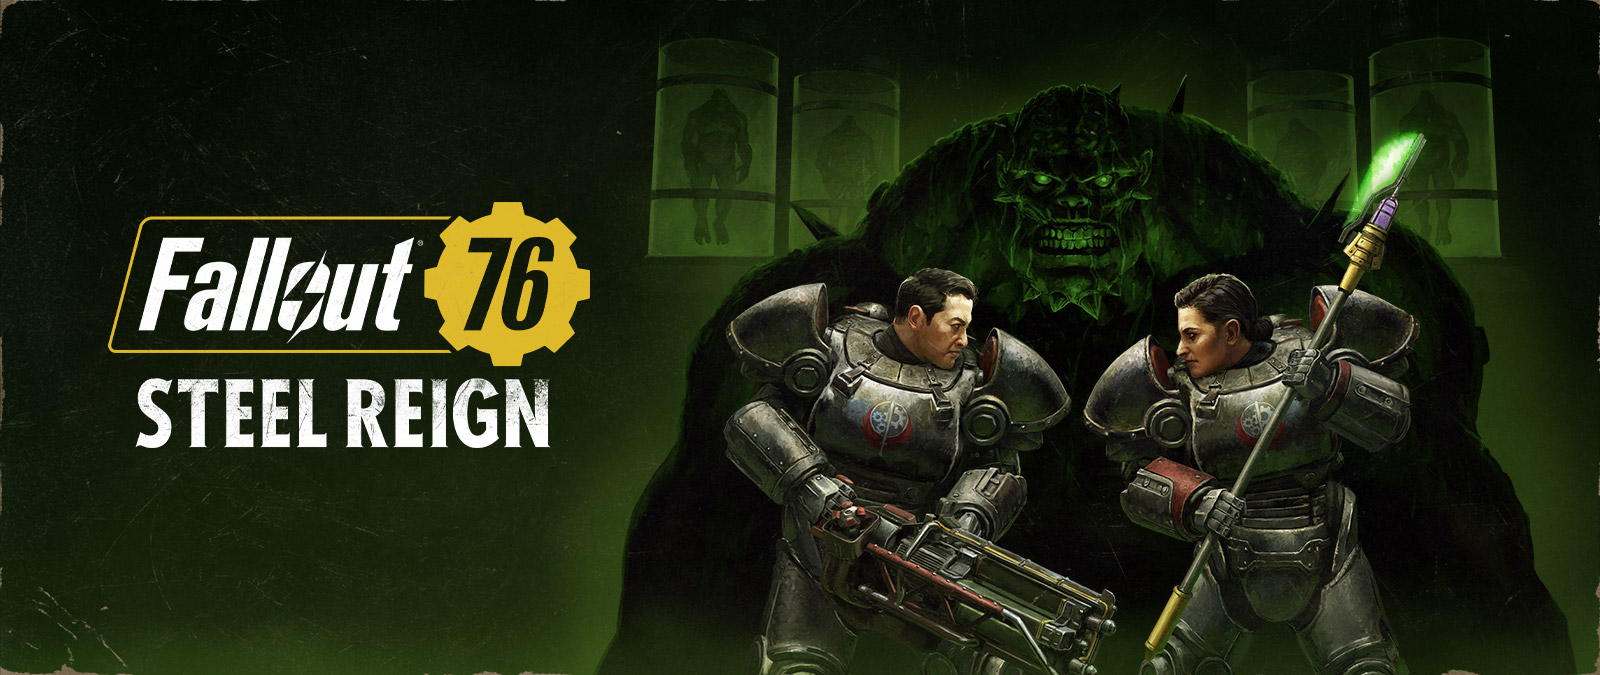 Fallout 76, Steel Reign, Dos personajes con trajes mecánicos se enfrentan con un gran monstruo de fondo.